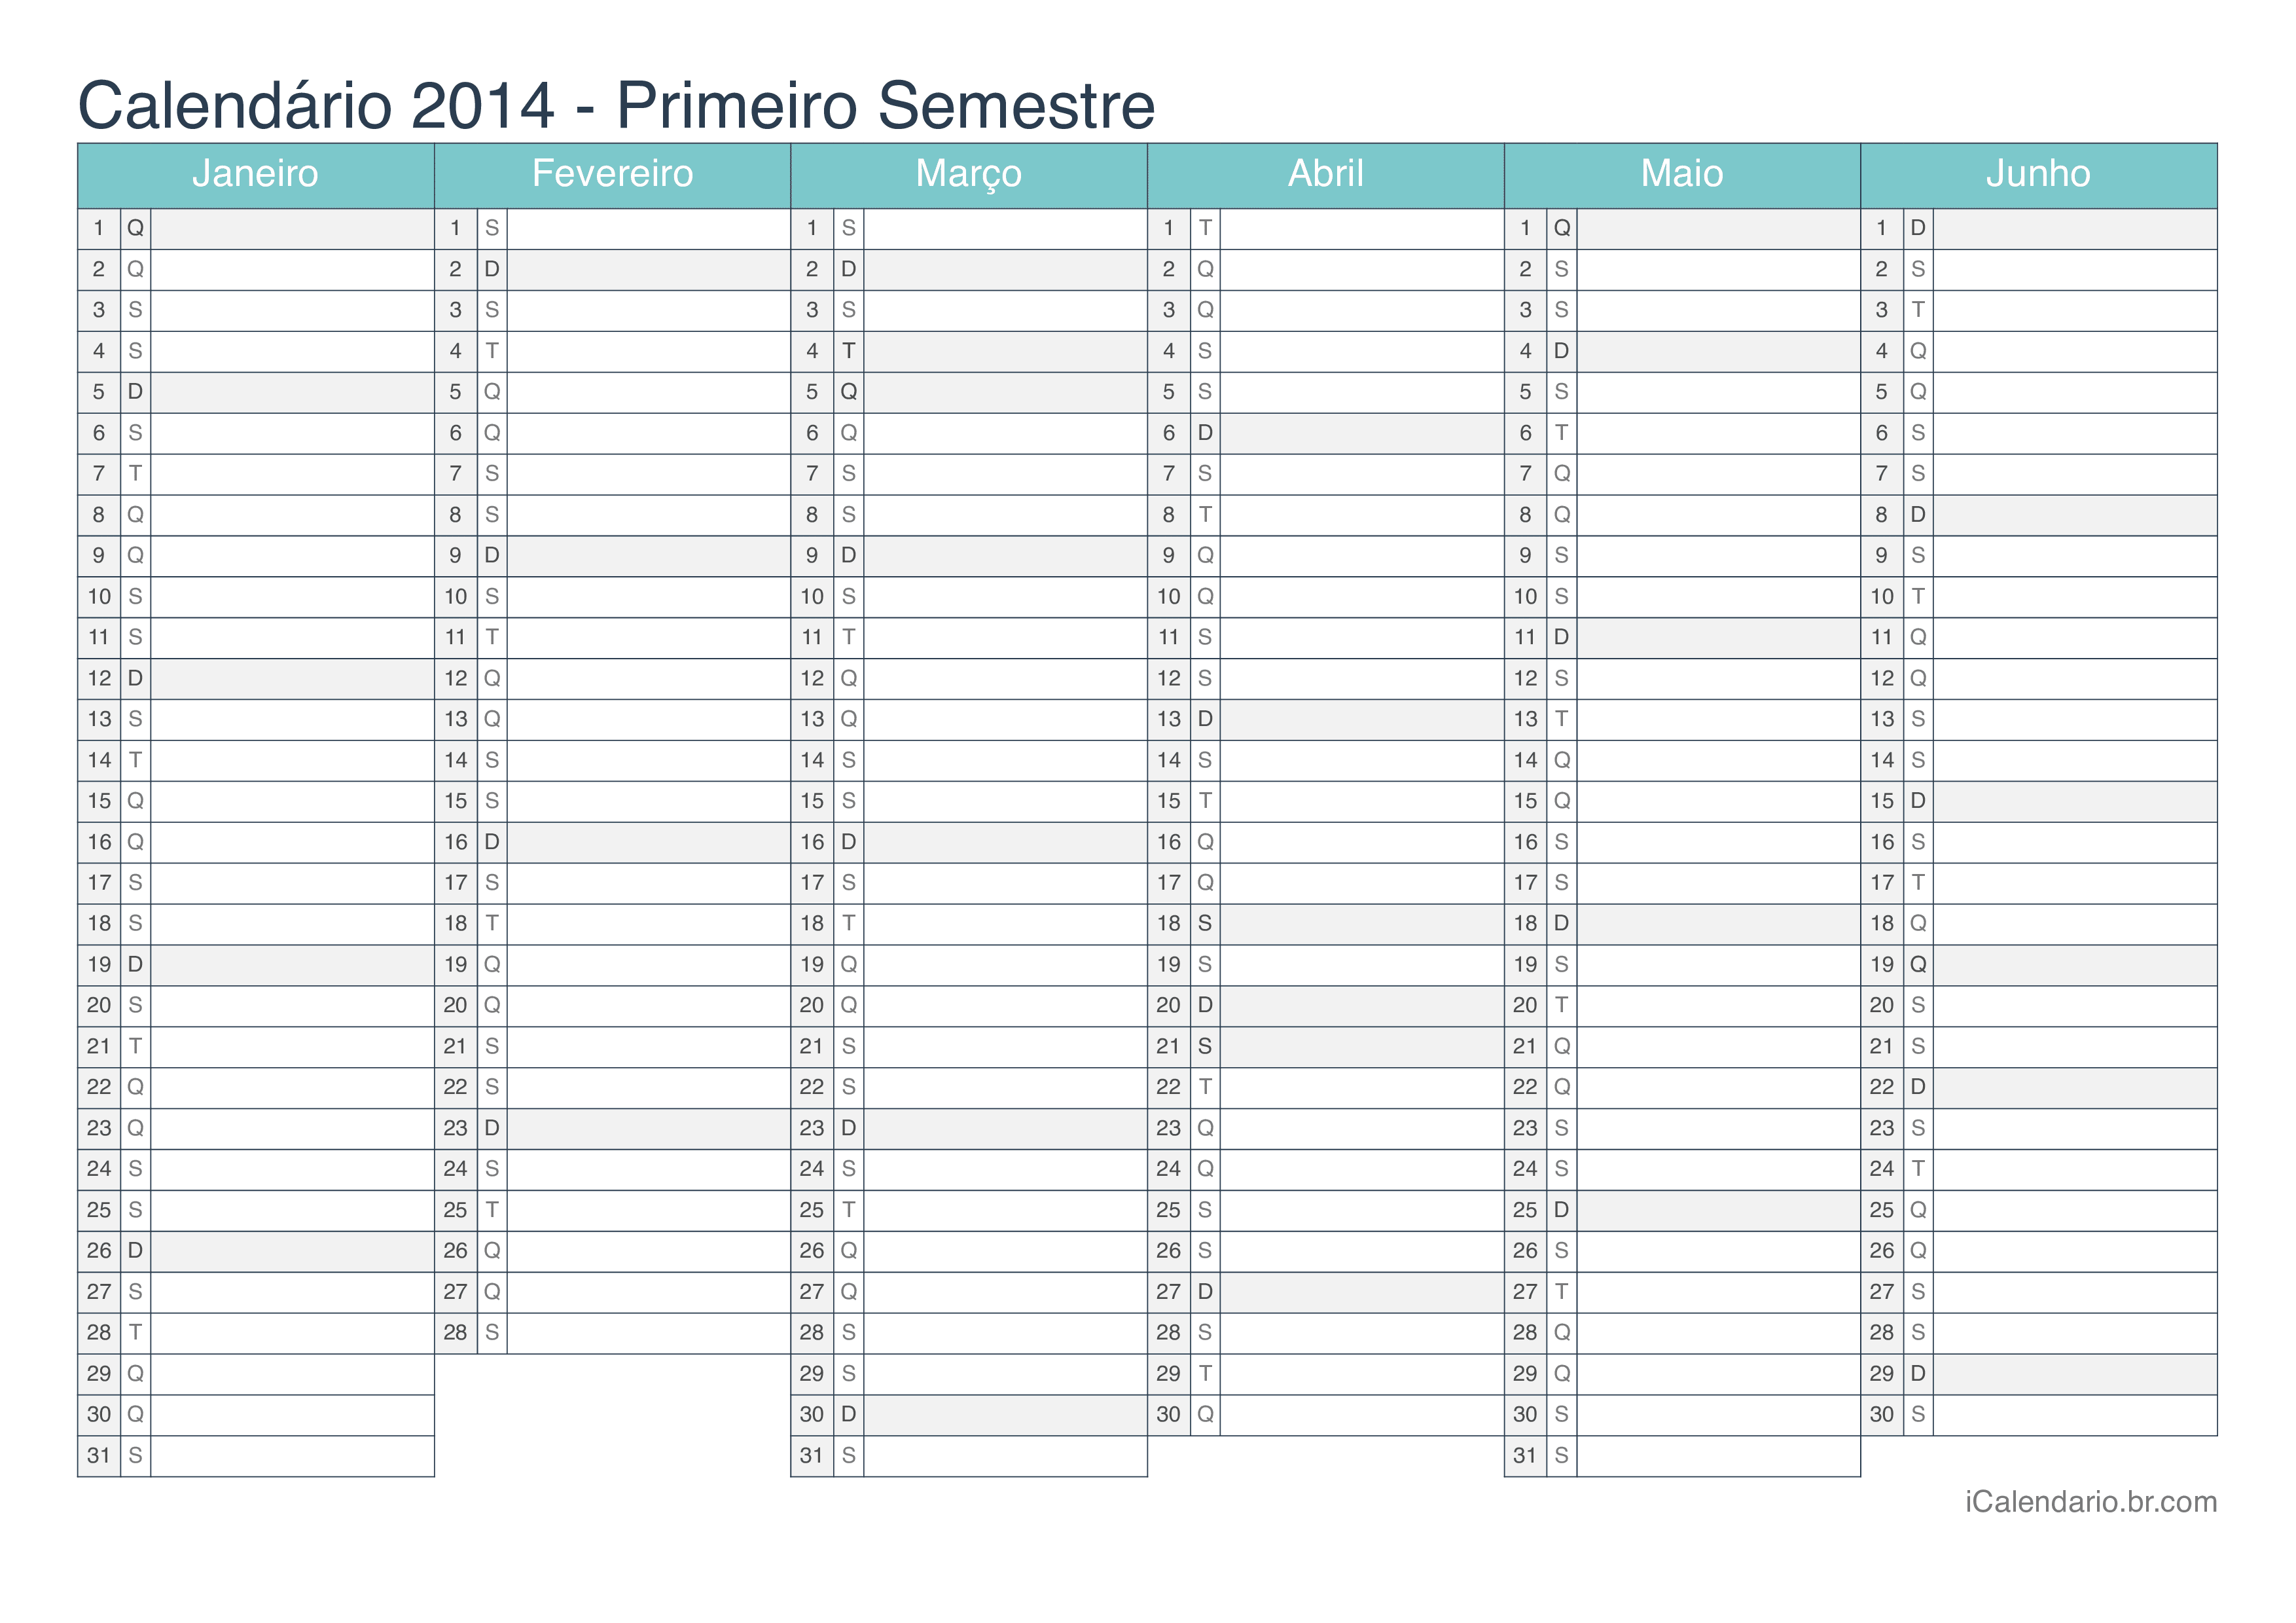 Calendário por semestre 2014 - Turquesa